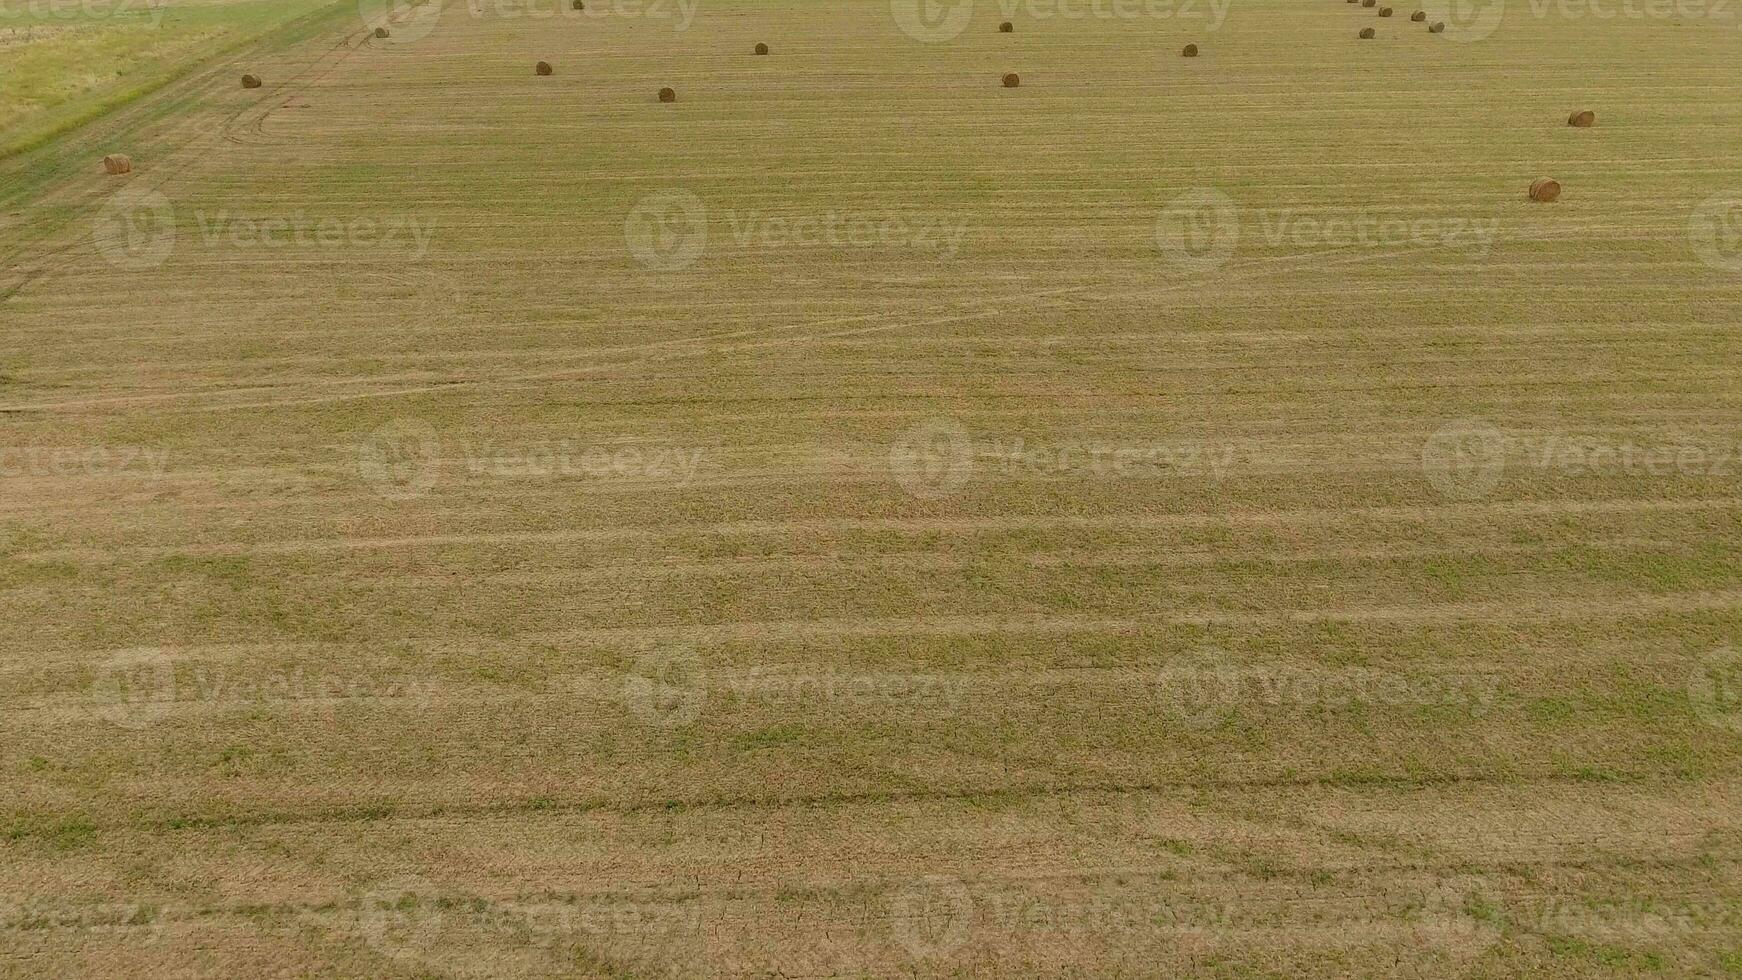 balar av hö i de fält. skörd hö för boskap utfodra. landskap fält med hö foto